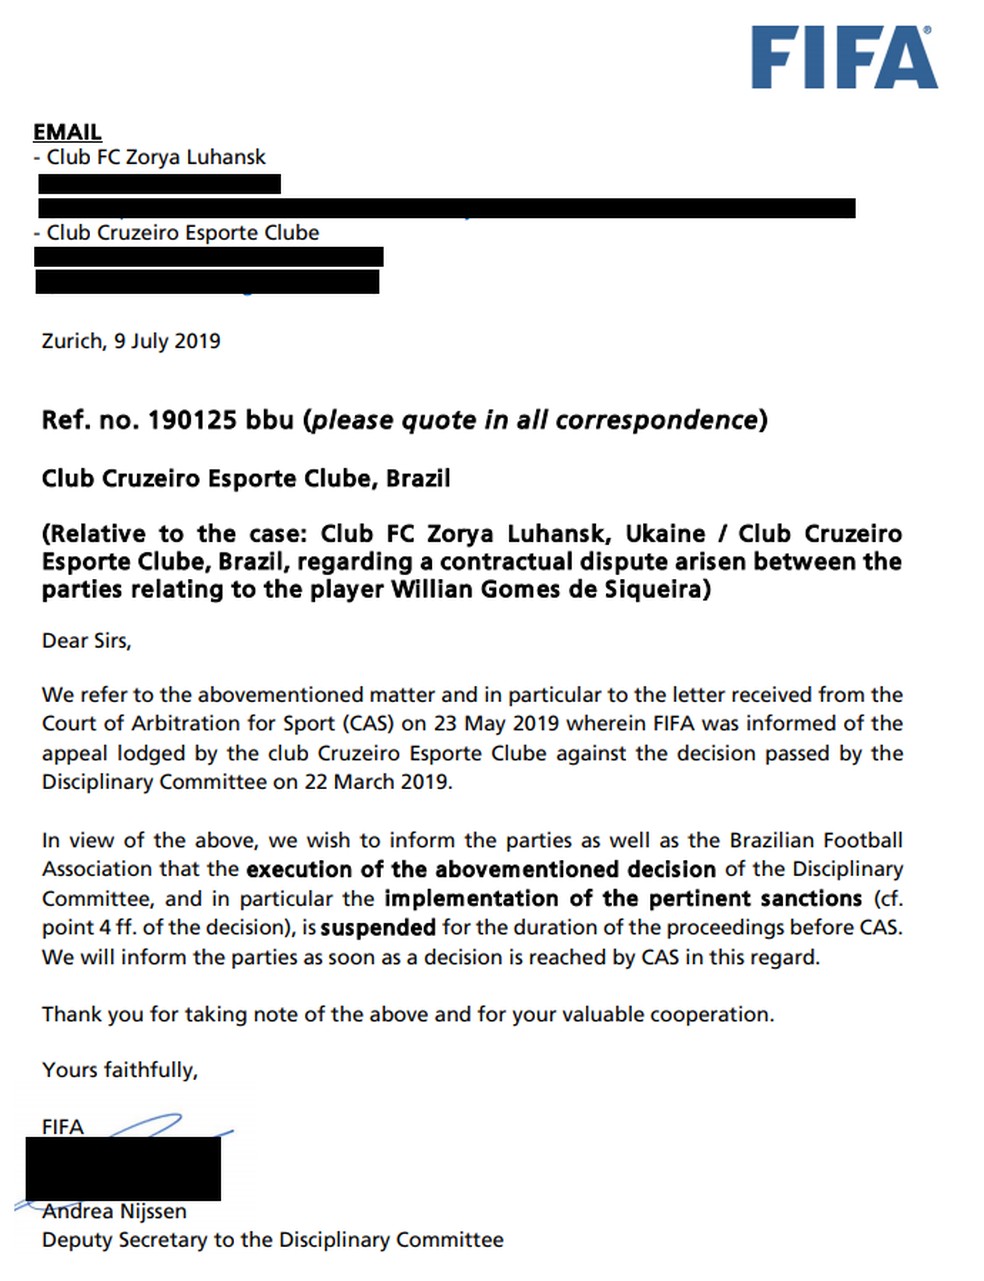 Carta da Fifa enviada ao Cruzeiro e ao Zorya sobre o recurso no TAS/CAS â€” Foto: ReproduÃ§Ã£o